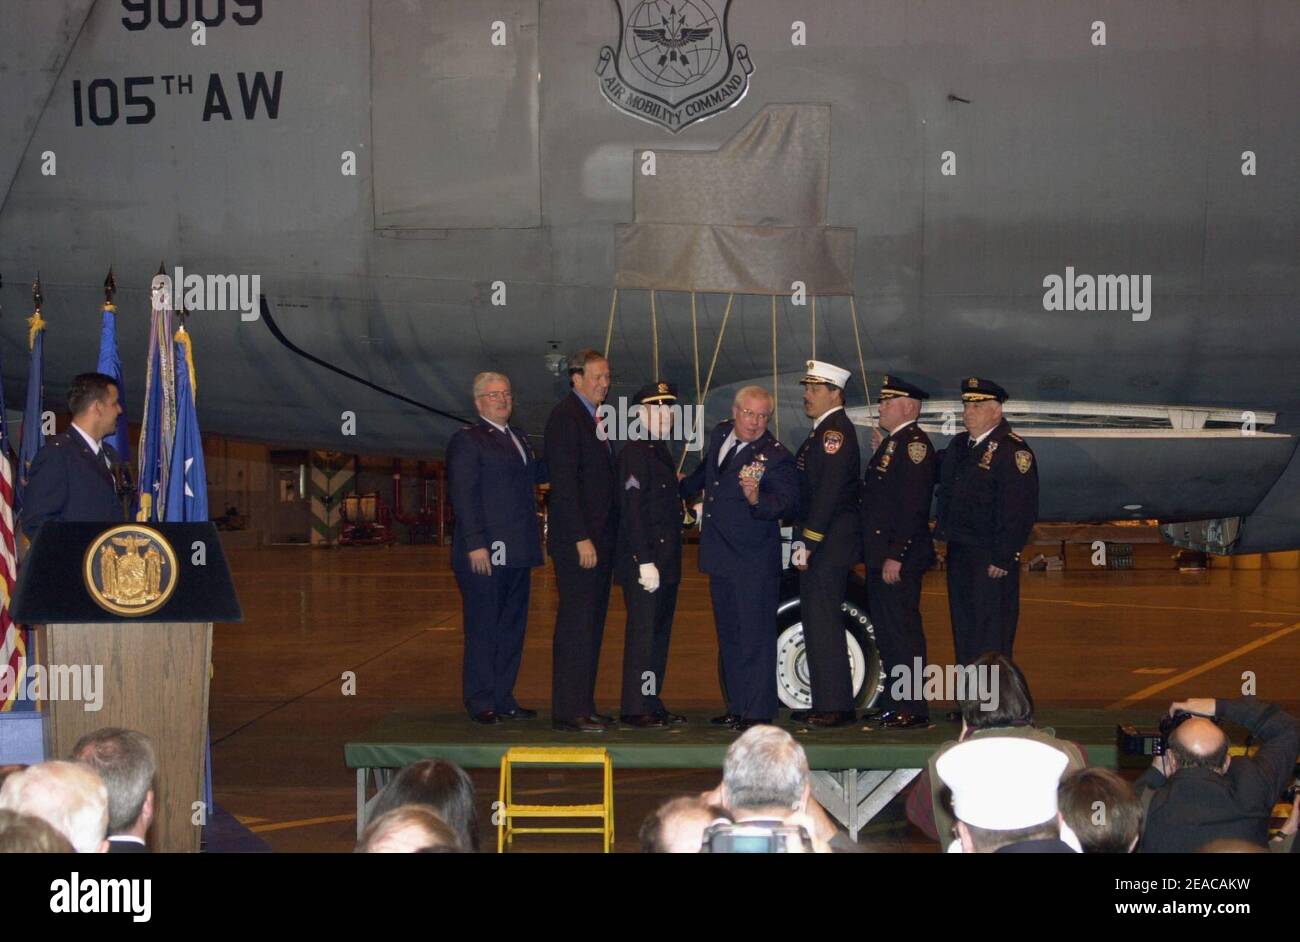 Les dirigeants de New York se préparent à dévoiler les œuvres d'art peintes sur le nez d'un avion Galaxy C-5A de l'USAF. Banque D'Images